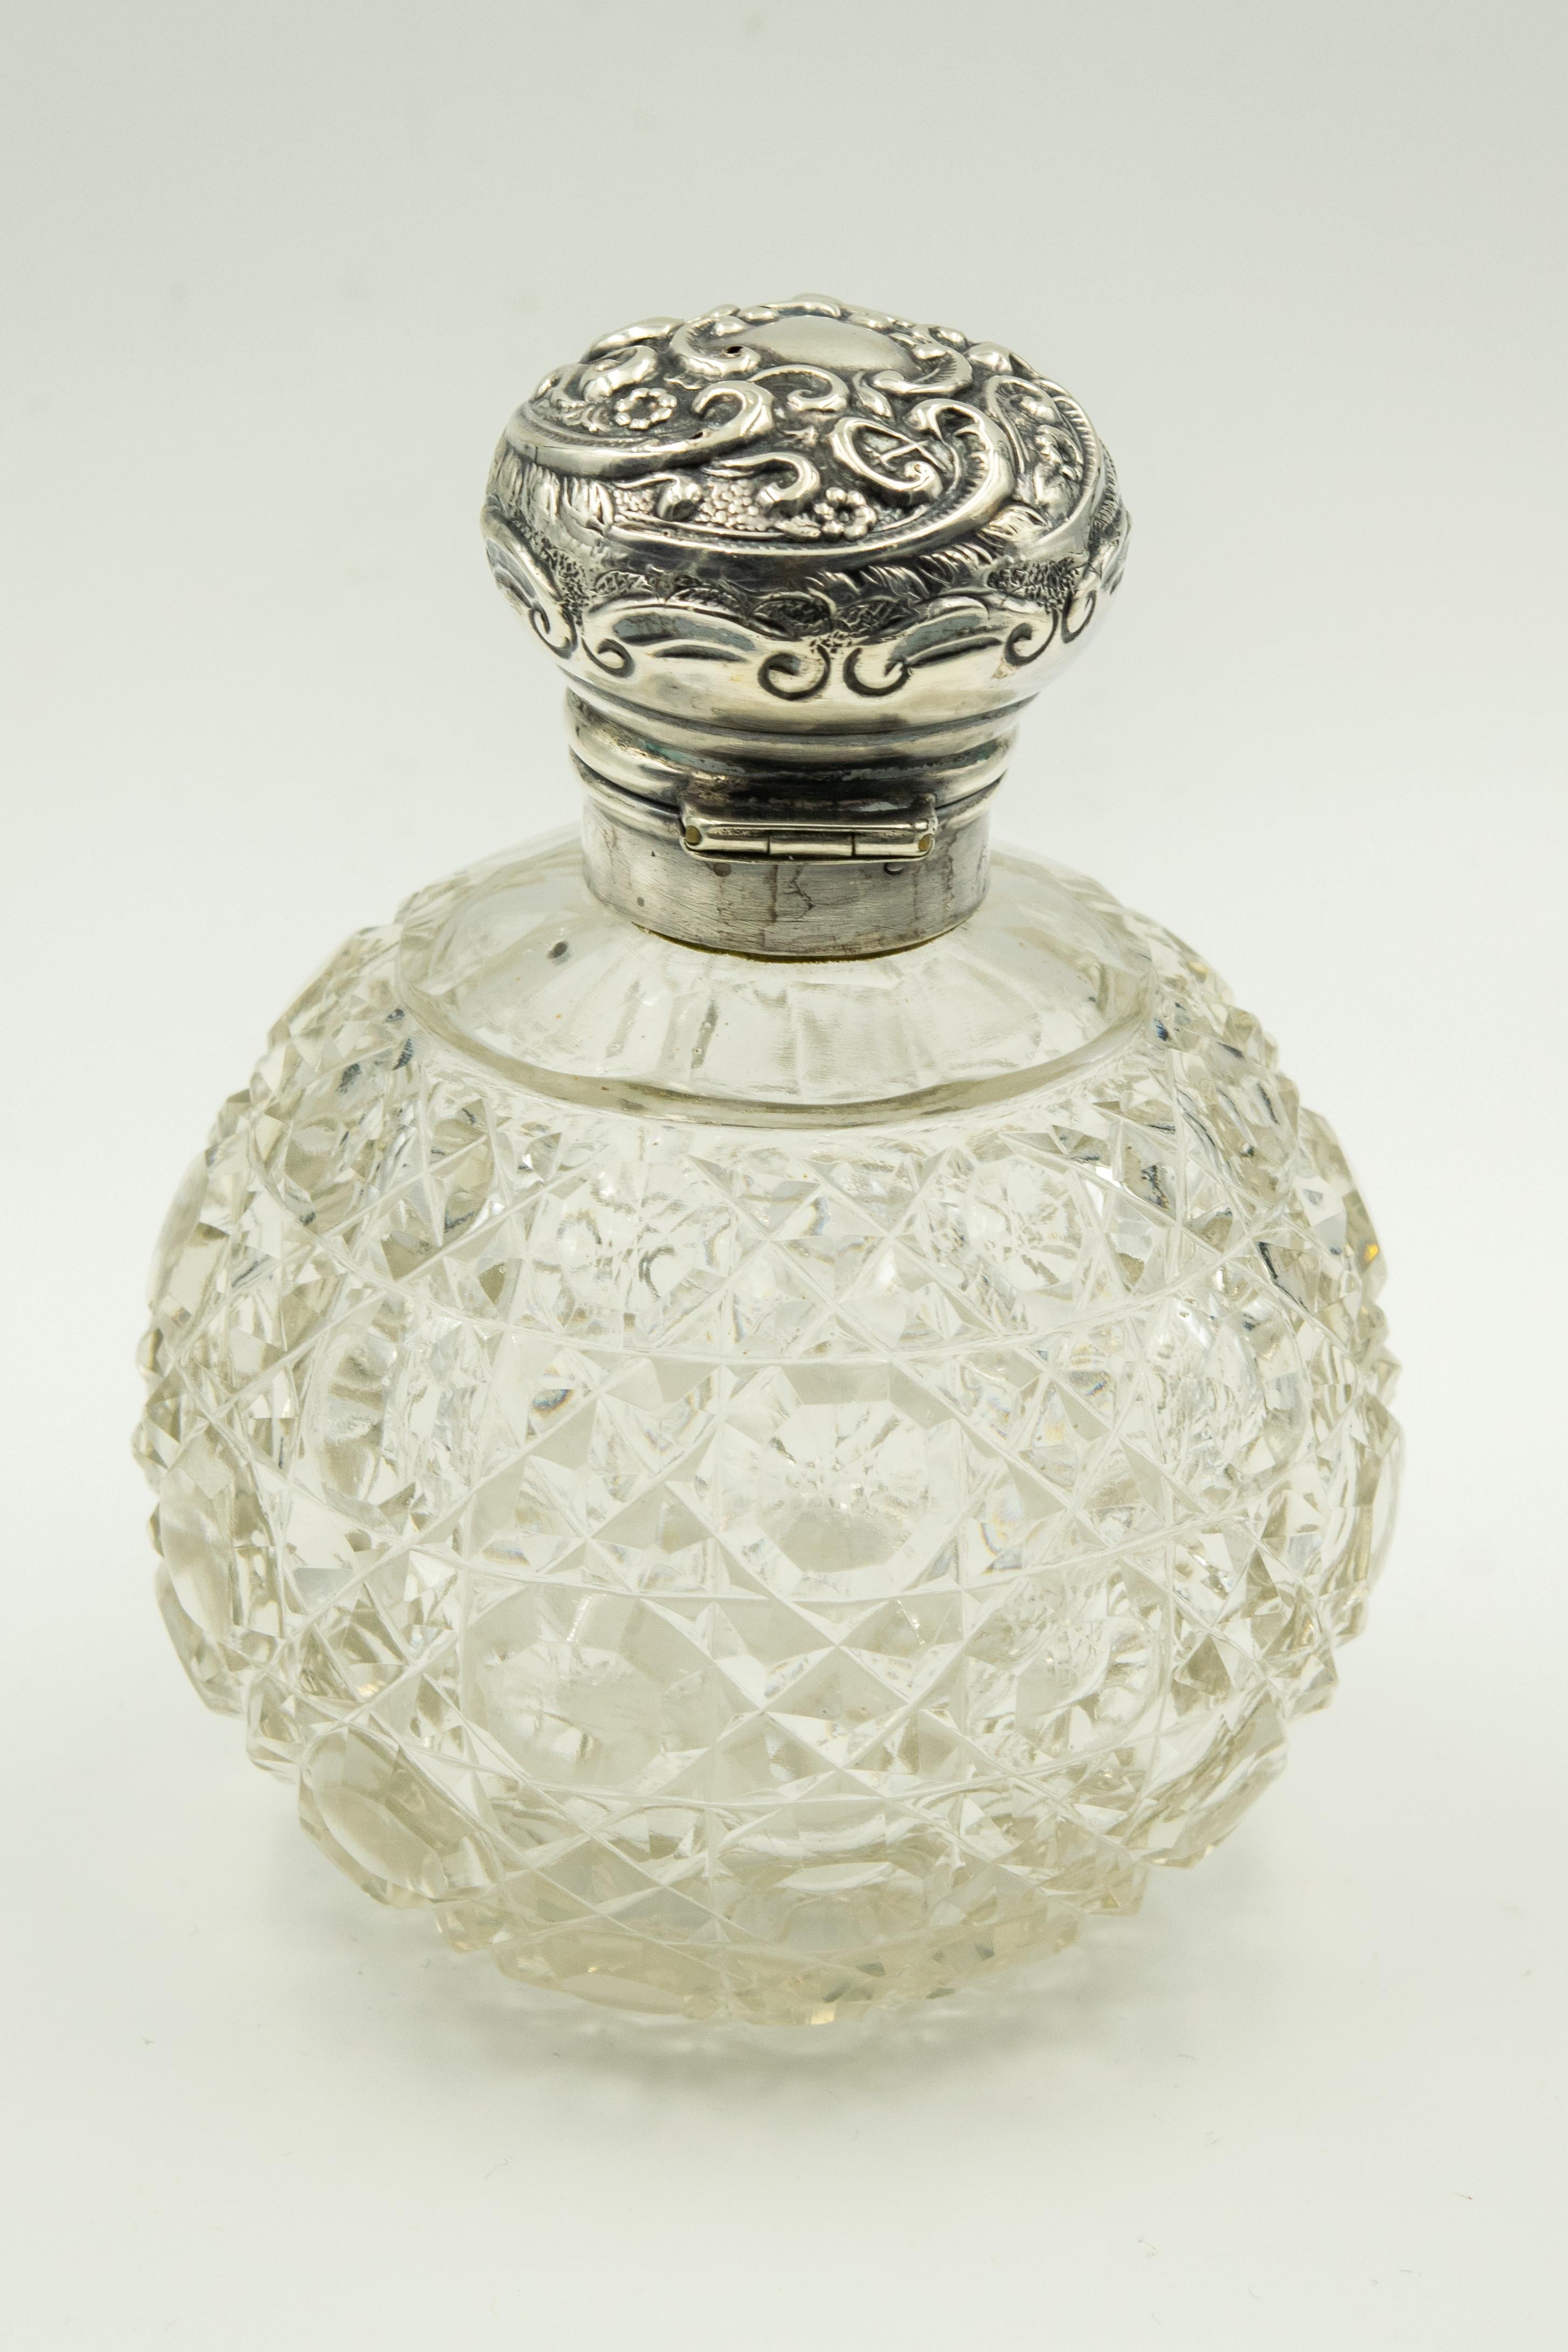 Metalwork Art Nouveau English Floral Repoussé Sterling Cut Crystal Perfume Scent Bottle